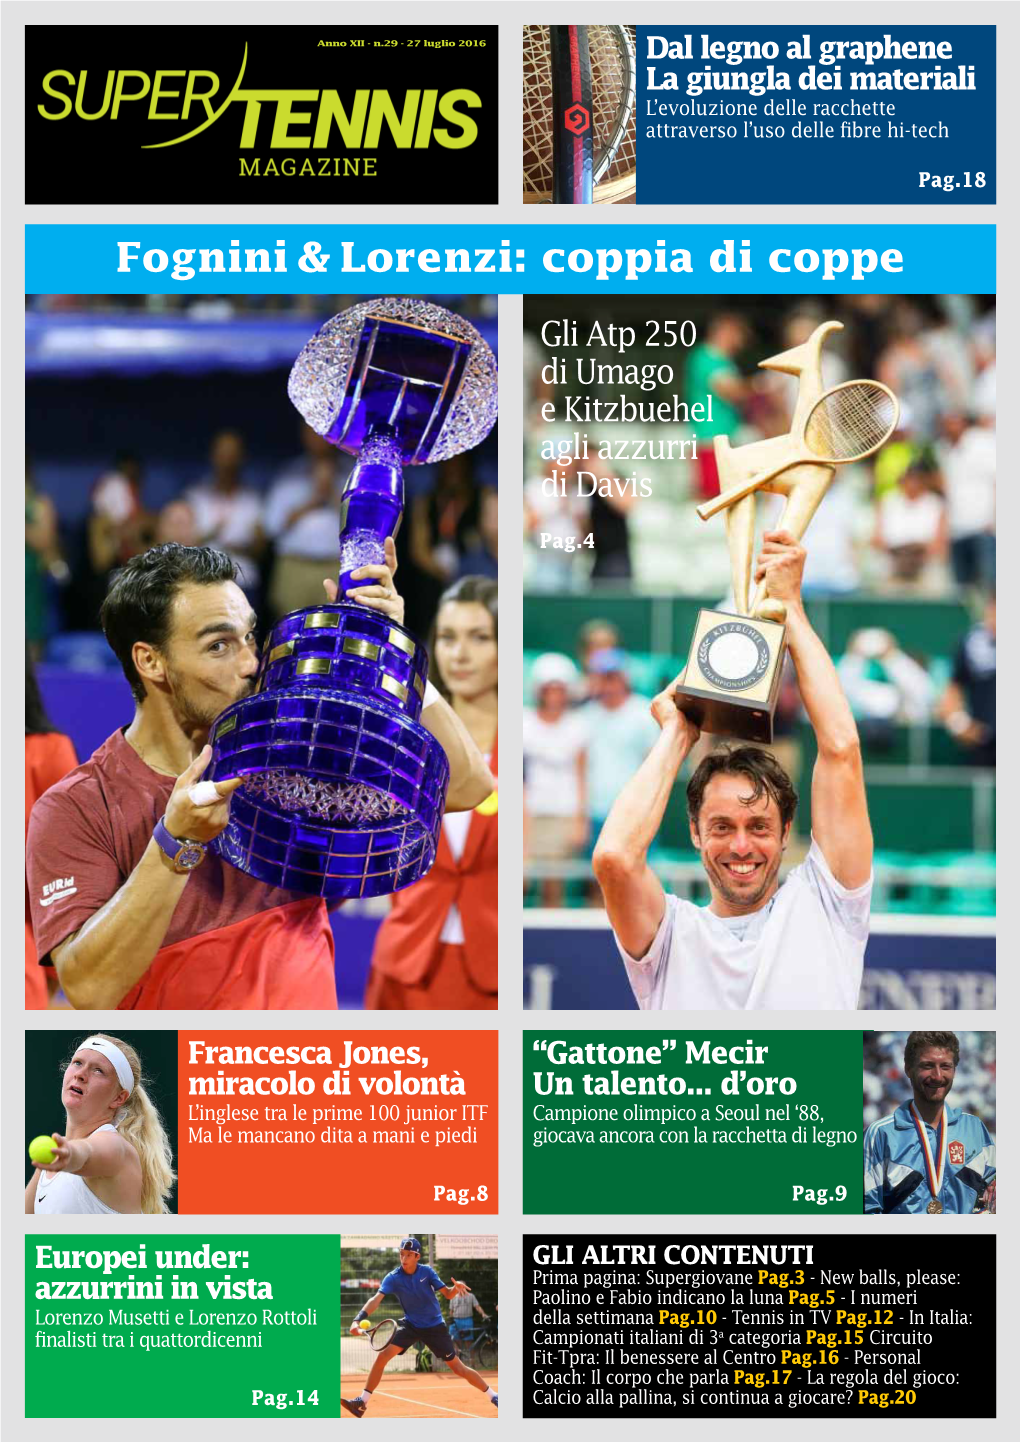 Fognini & Lorenzi: Coppia Di Coppe